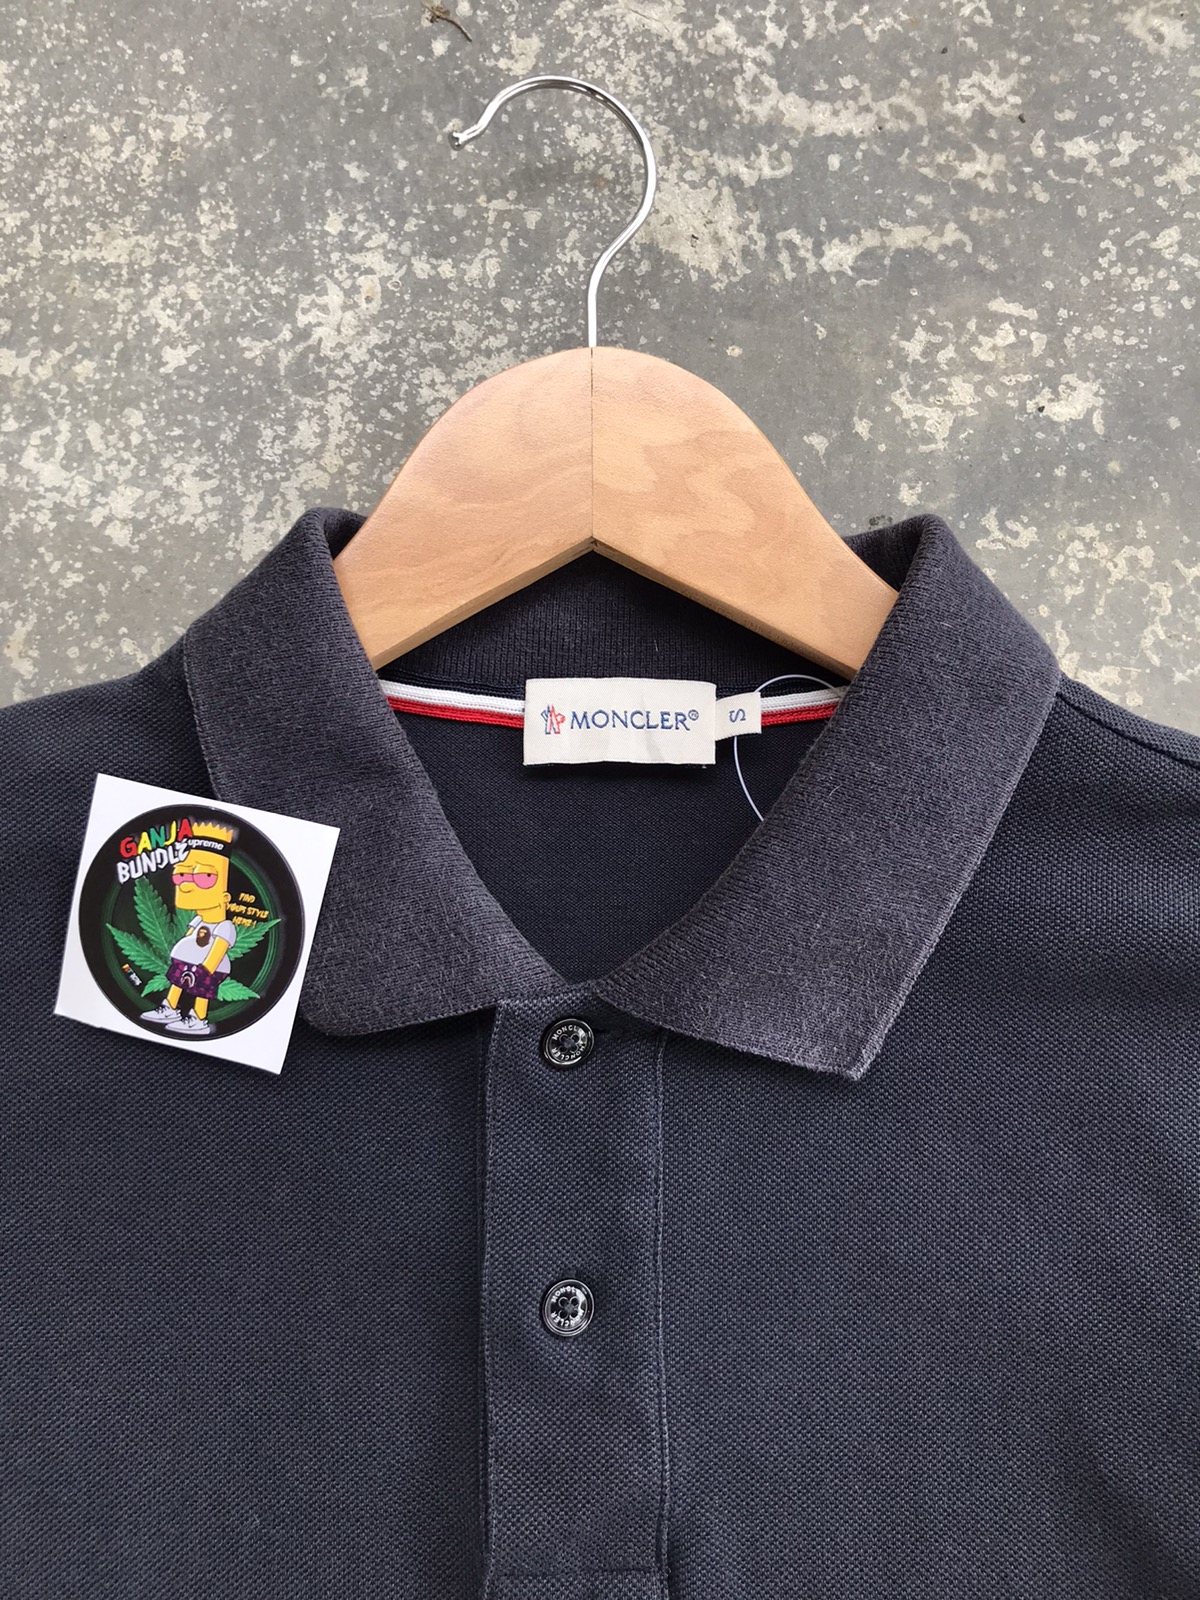 Moncler Polo Shirt - 3